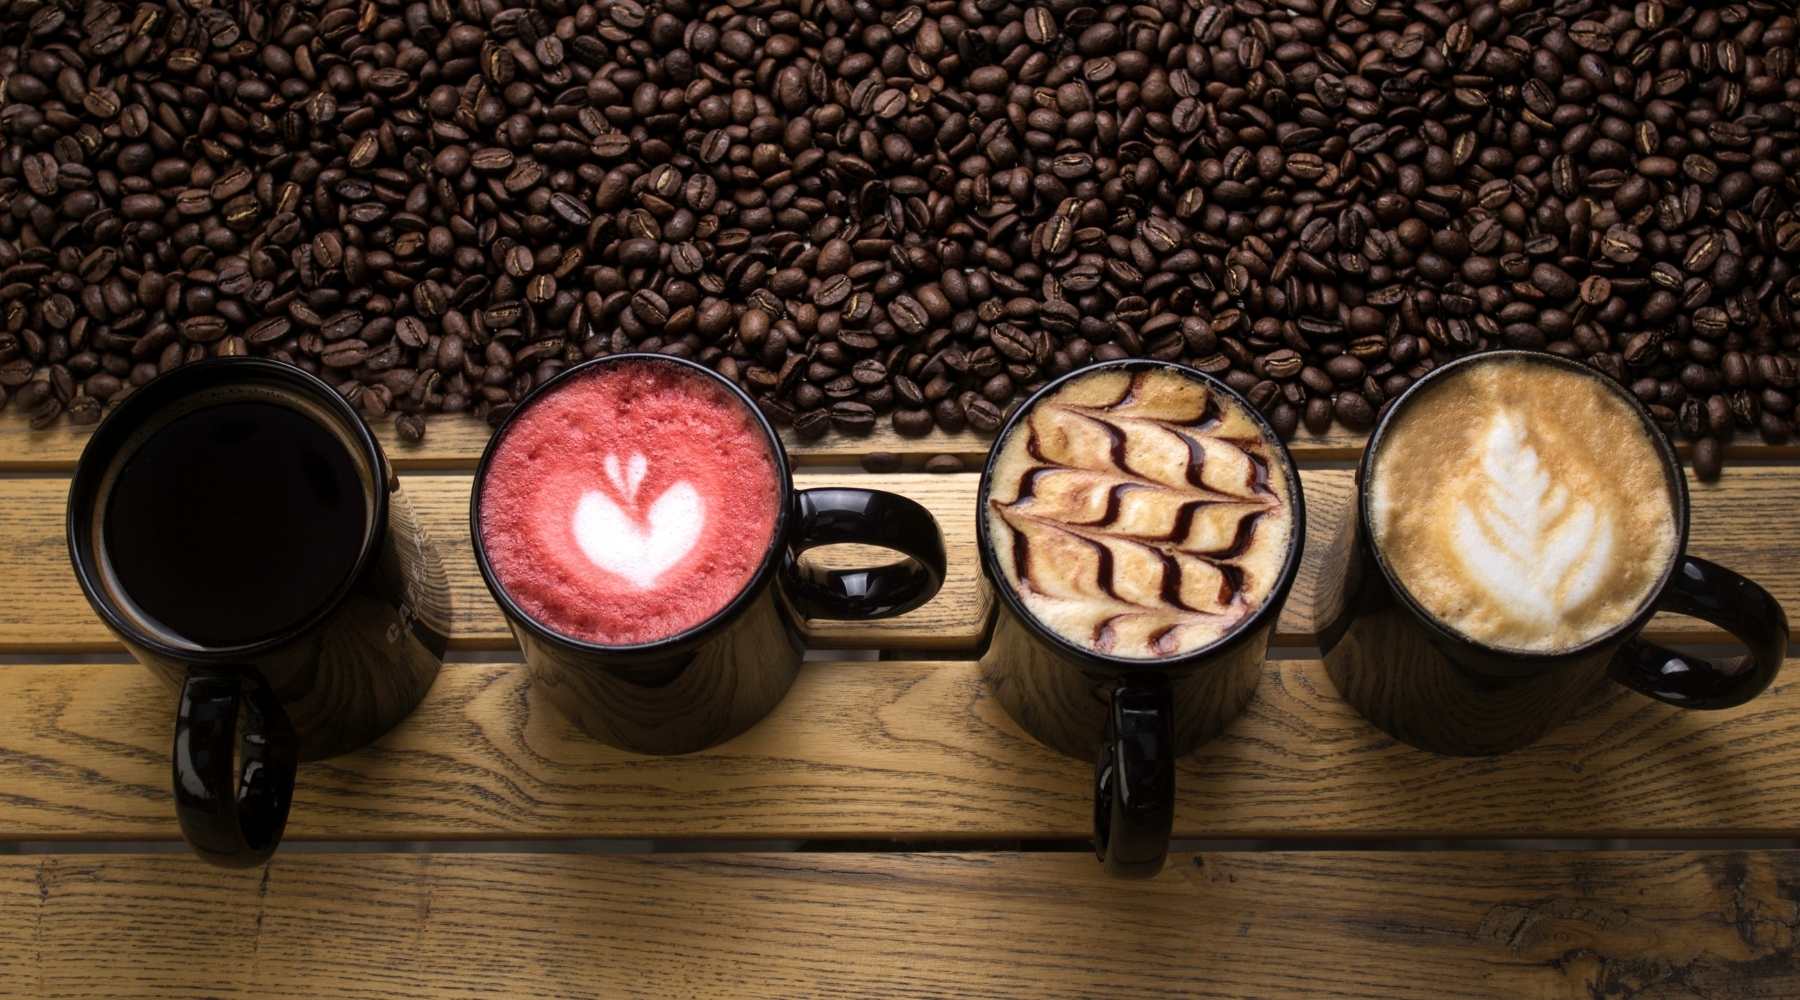 Cute cups of coffee. Latte, espresso, frappuccino, cappuccino